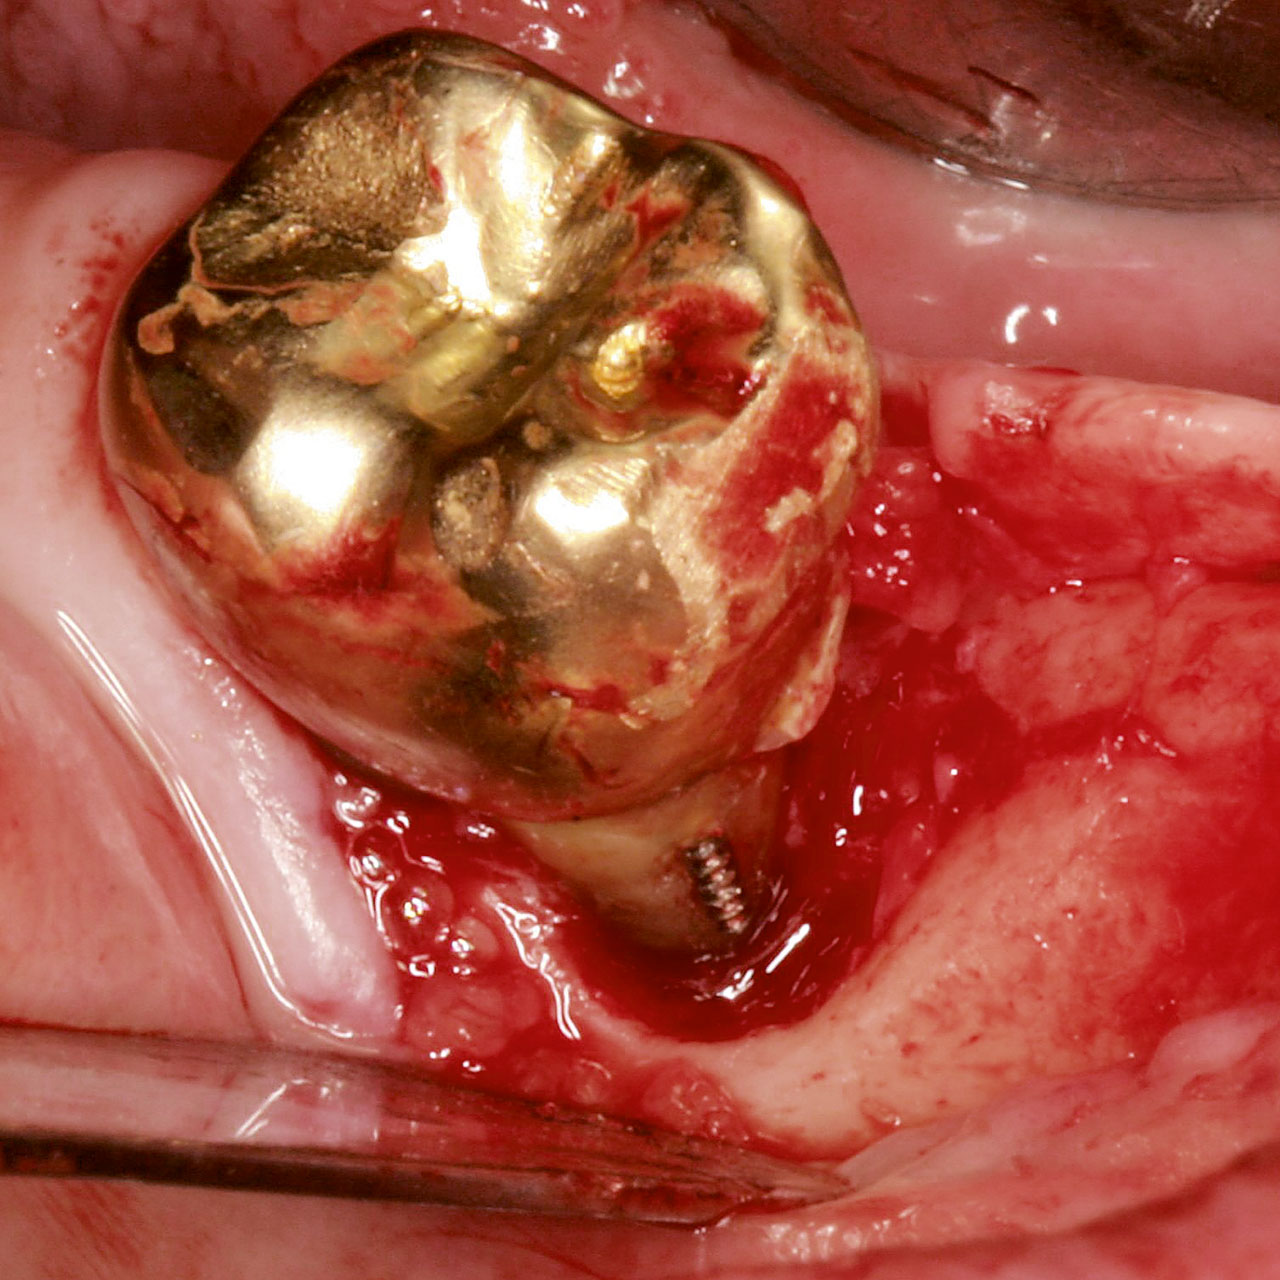 Abb. 2 Verletzung der biologischen Breite durch Wurzelstiftperforation mit zirkulärer Resorption des Alveolarknochens.